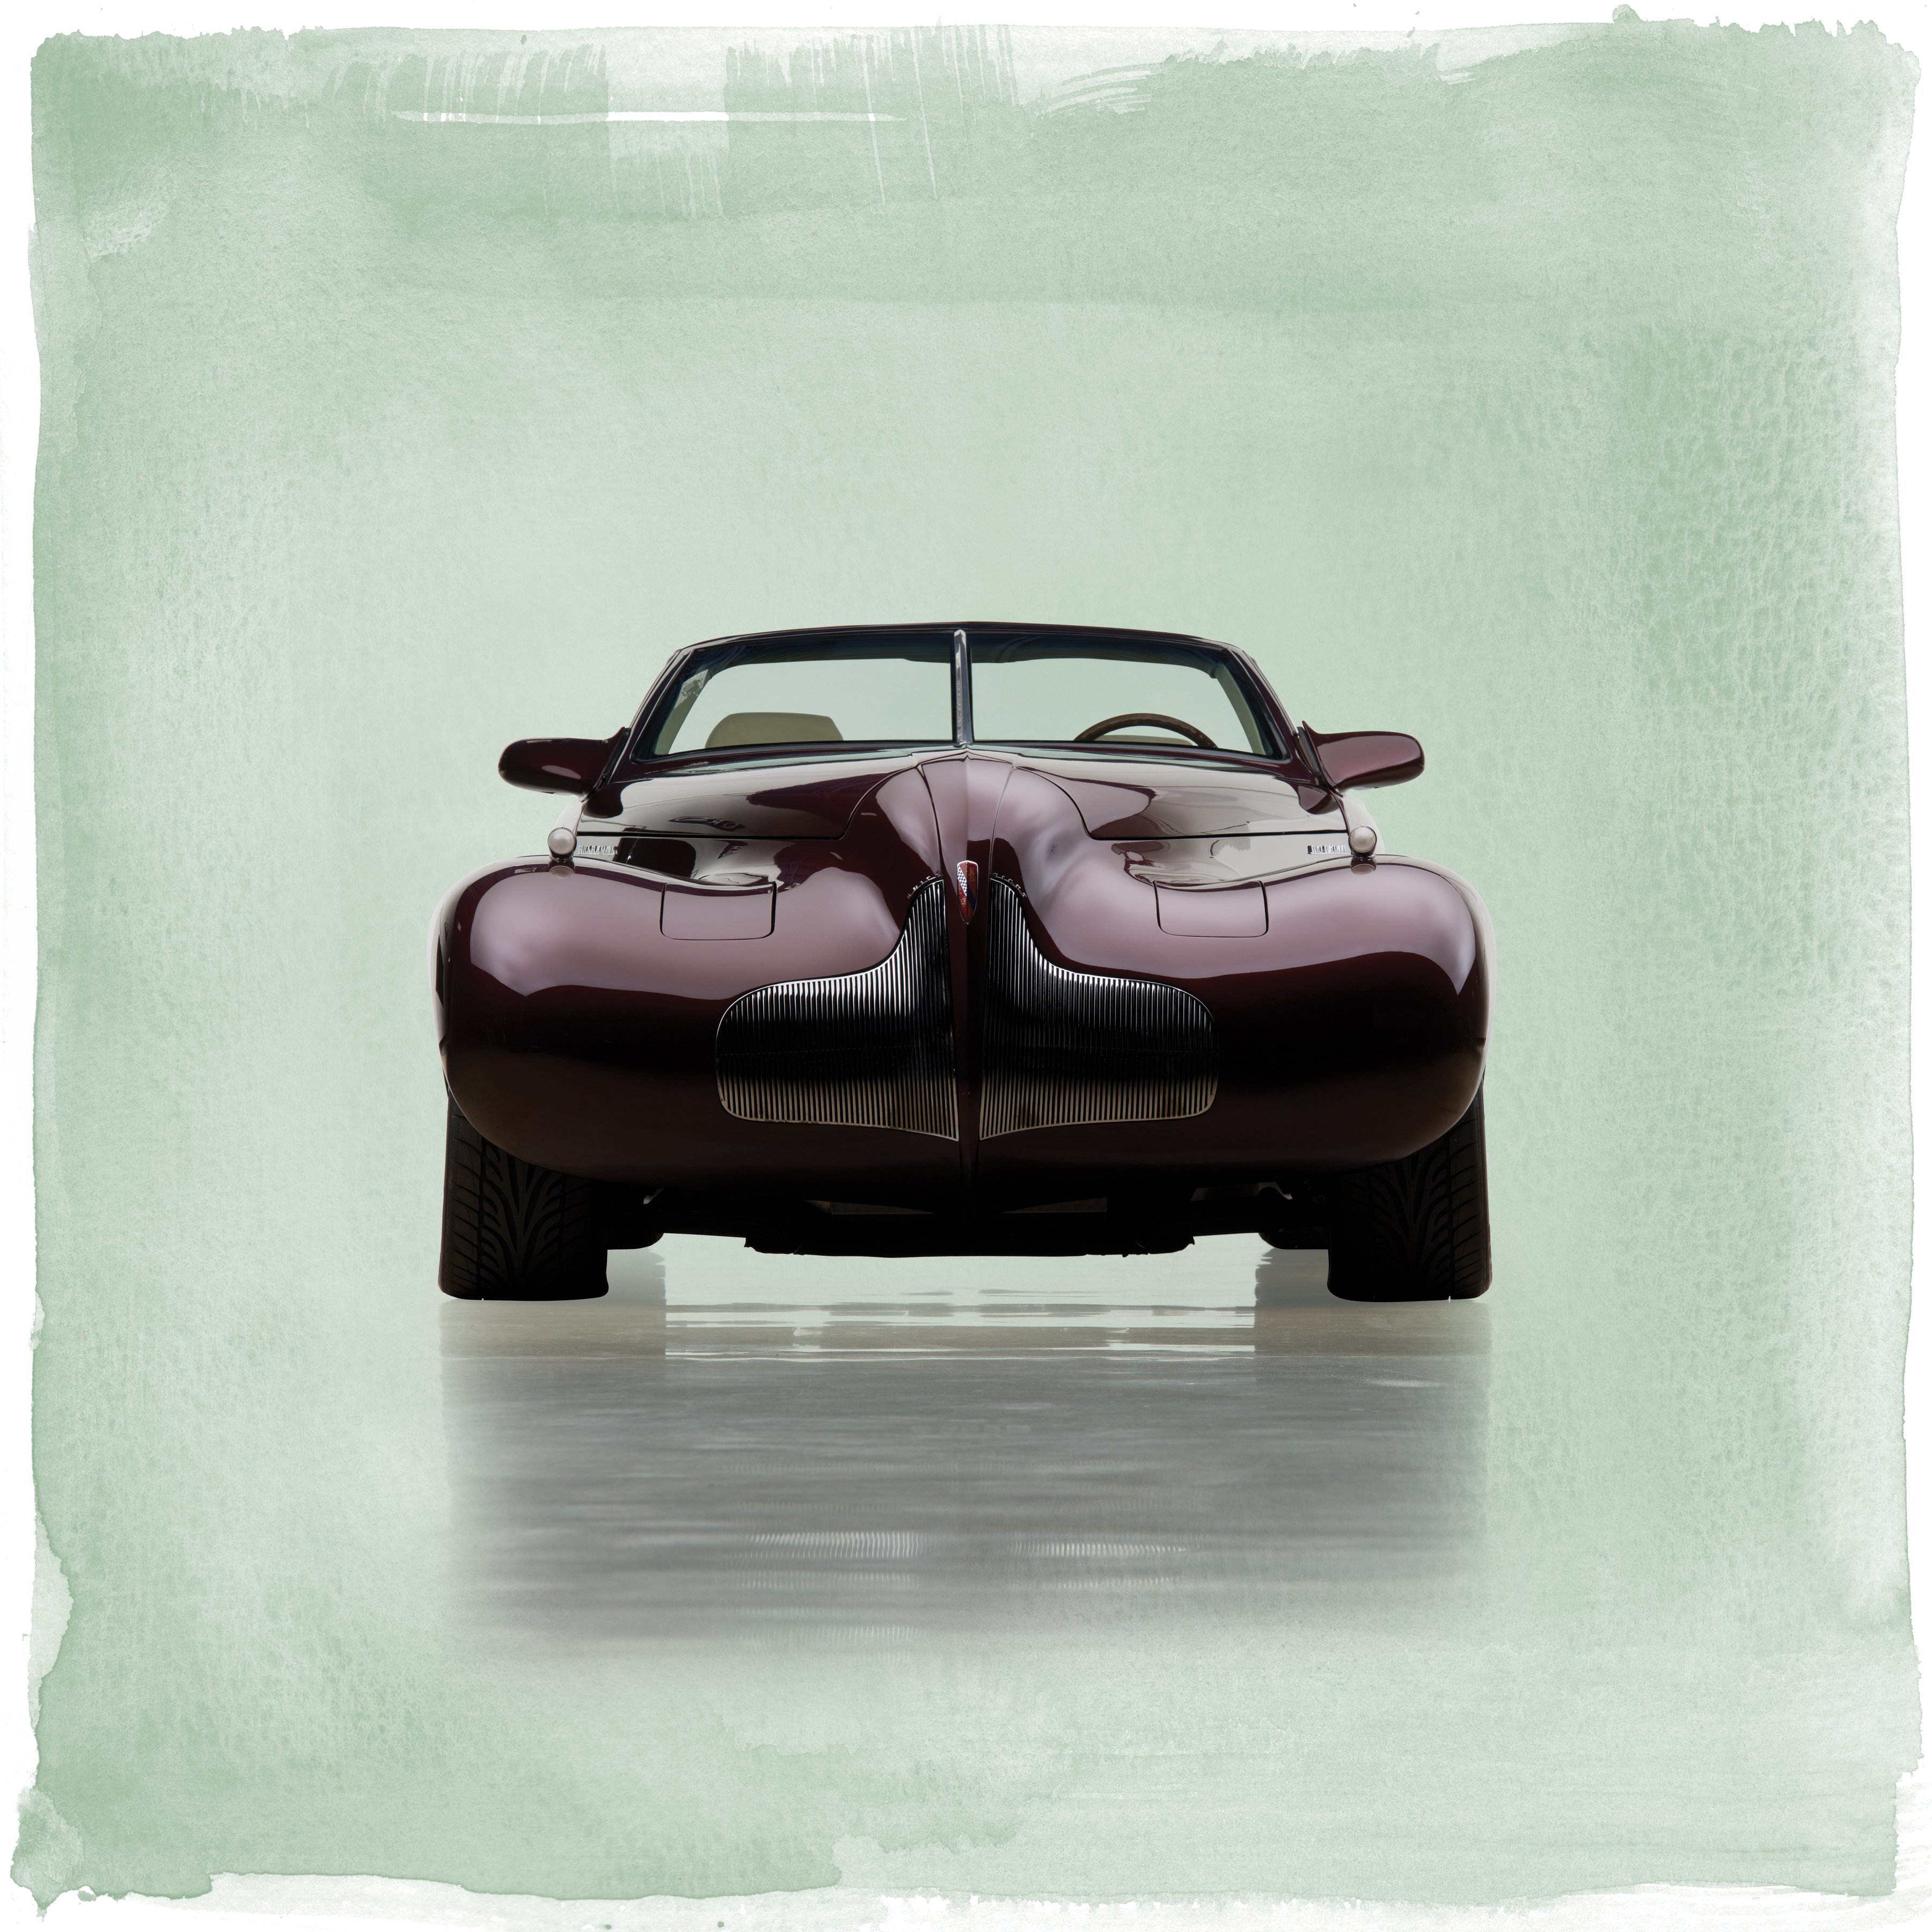 2000, Buick, Blackhawk, Concept, Supercar Wallpaper